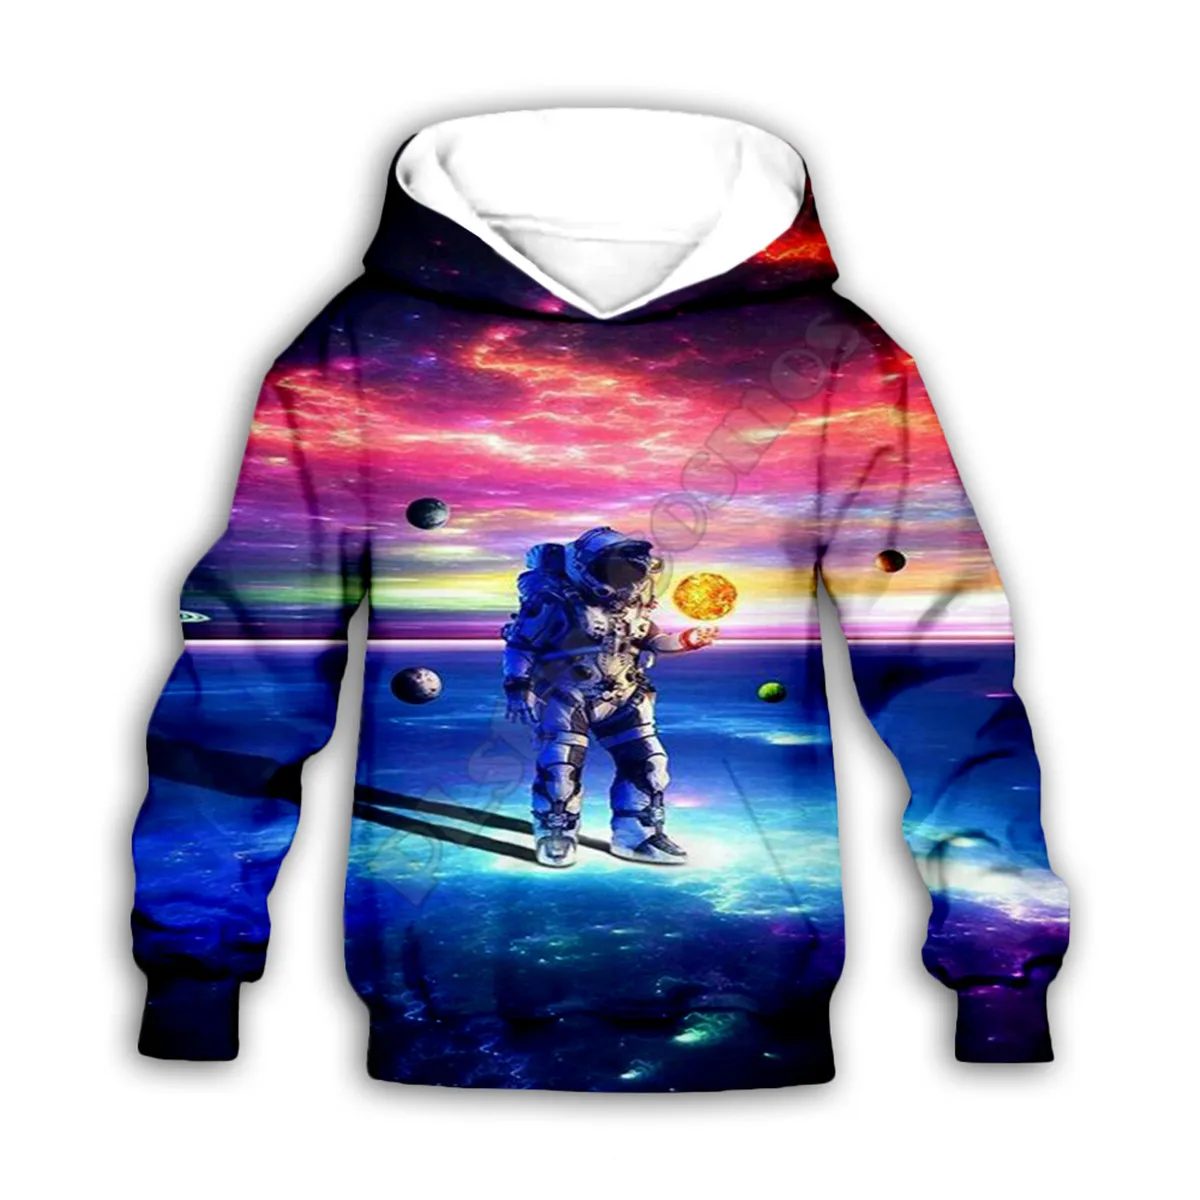 

Худи с 3d принтом астронавта Galaxy, семейный костюм, футболка на молнии, пуловер, Детский костюм, свитшот, спортивный костюм/шорты 08